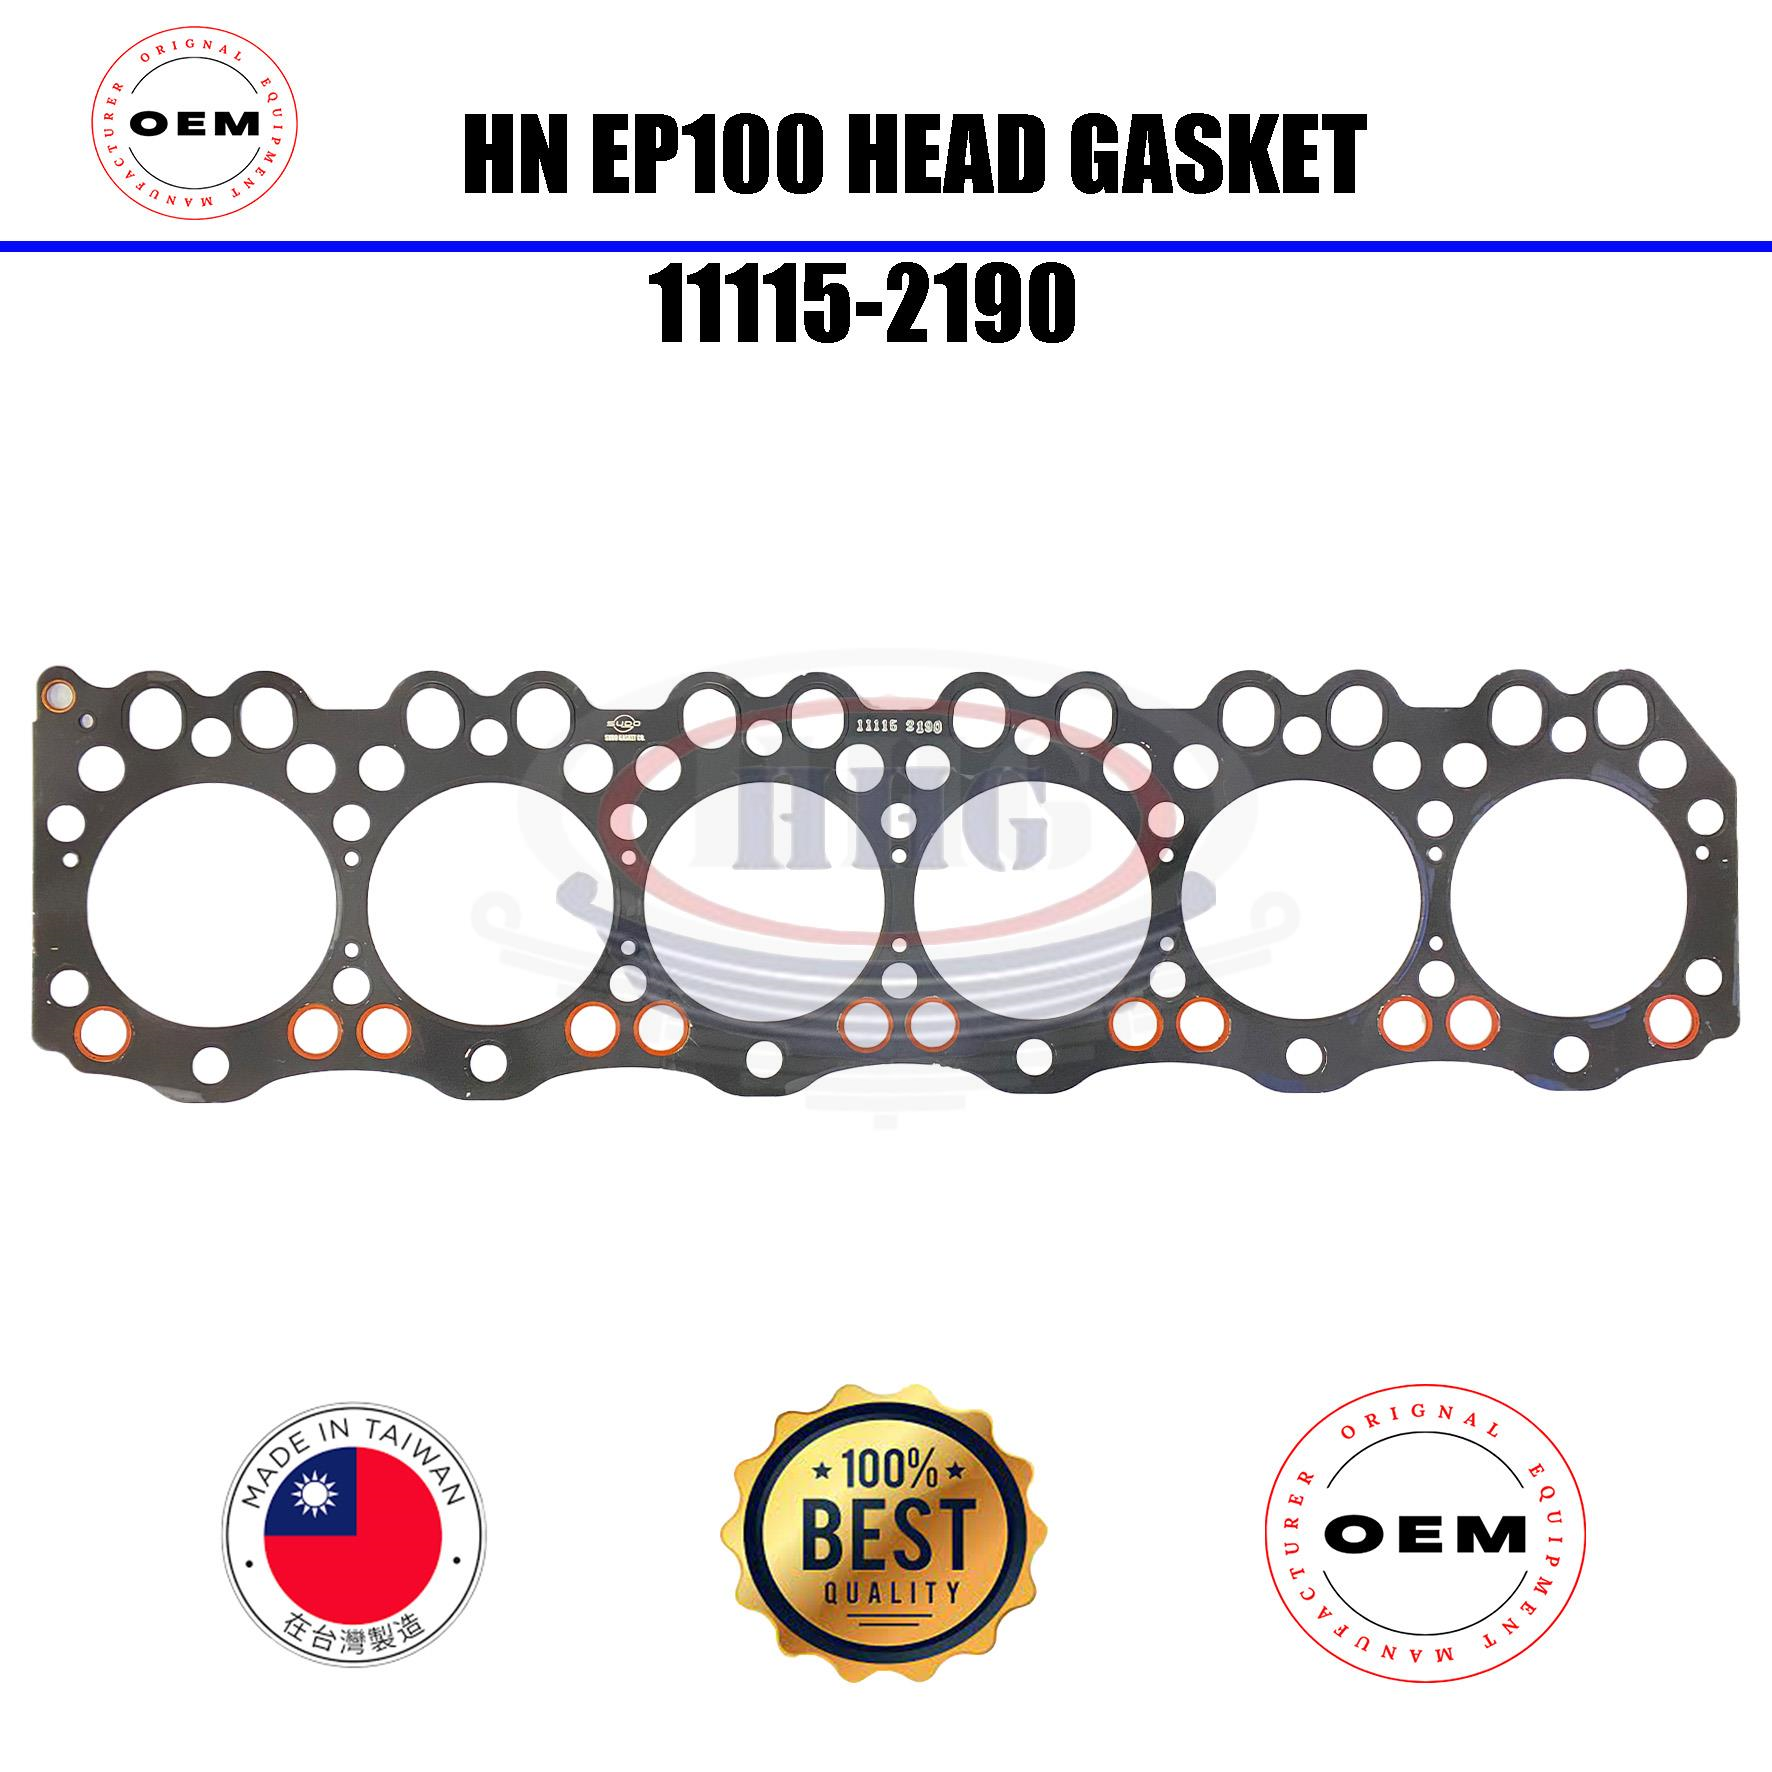 OEM Hino EP100 Head Gasket (11115-2190)